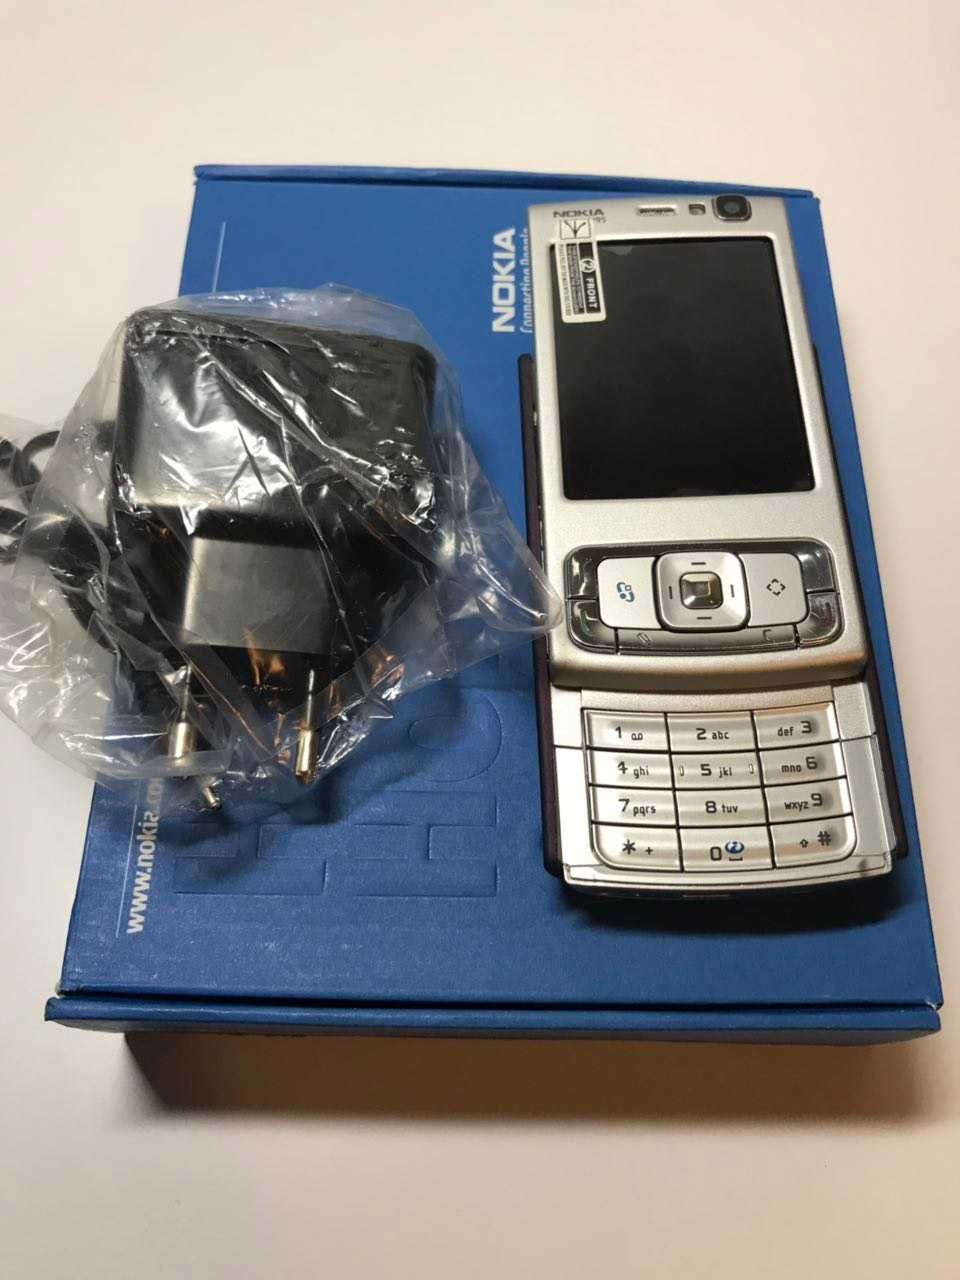 Nokia N95 простой слайдер новый телефон 850 мАч